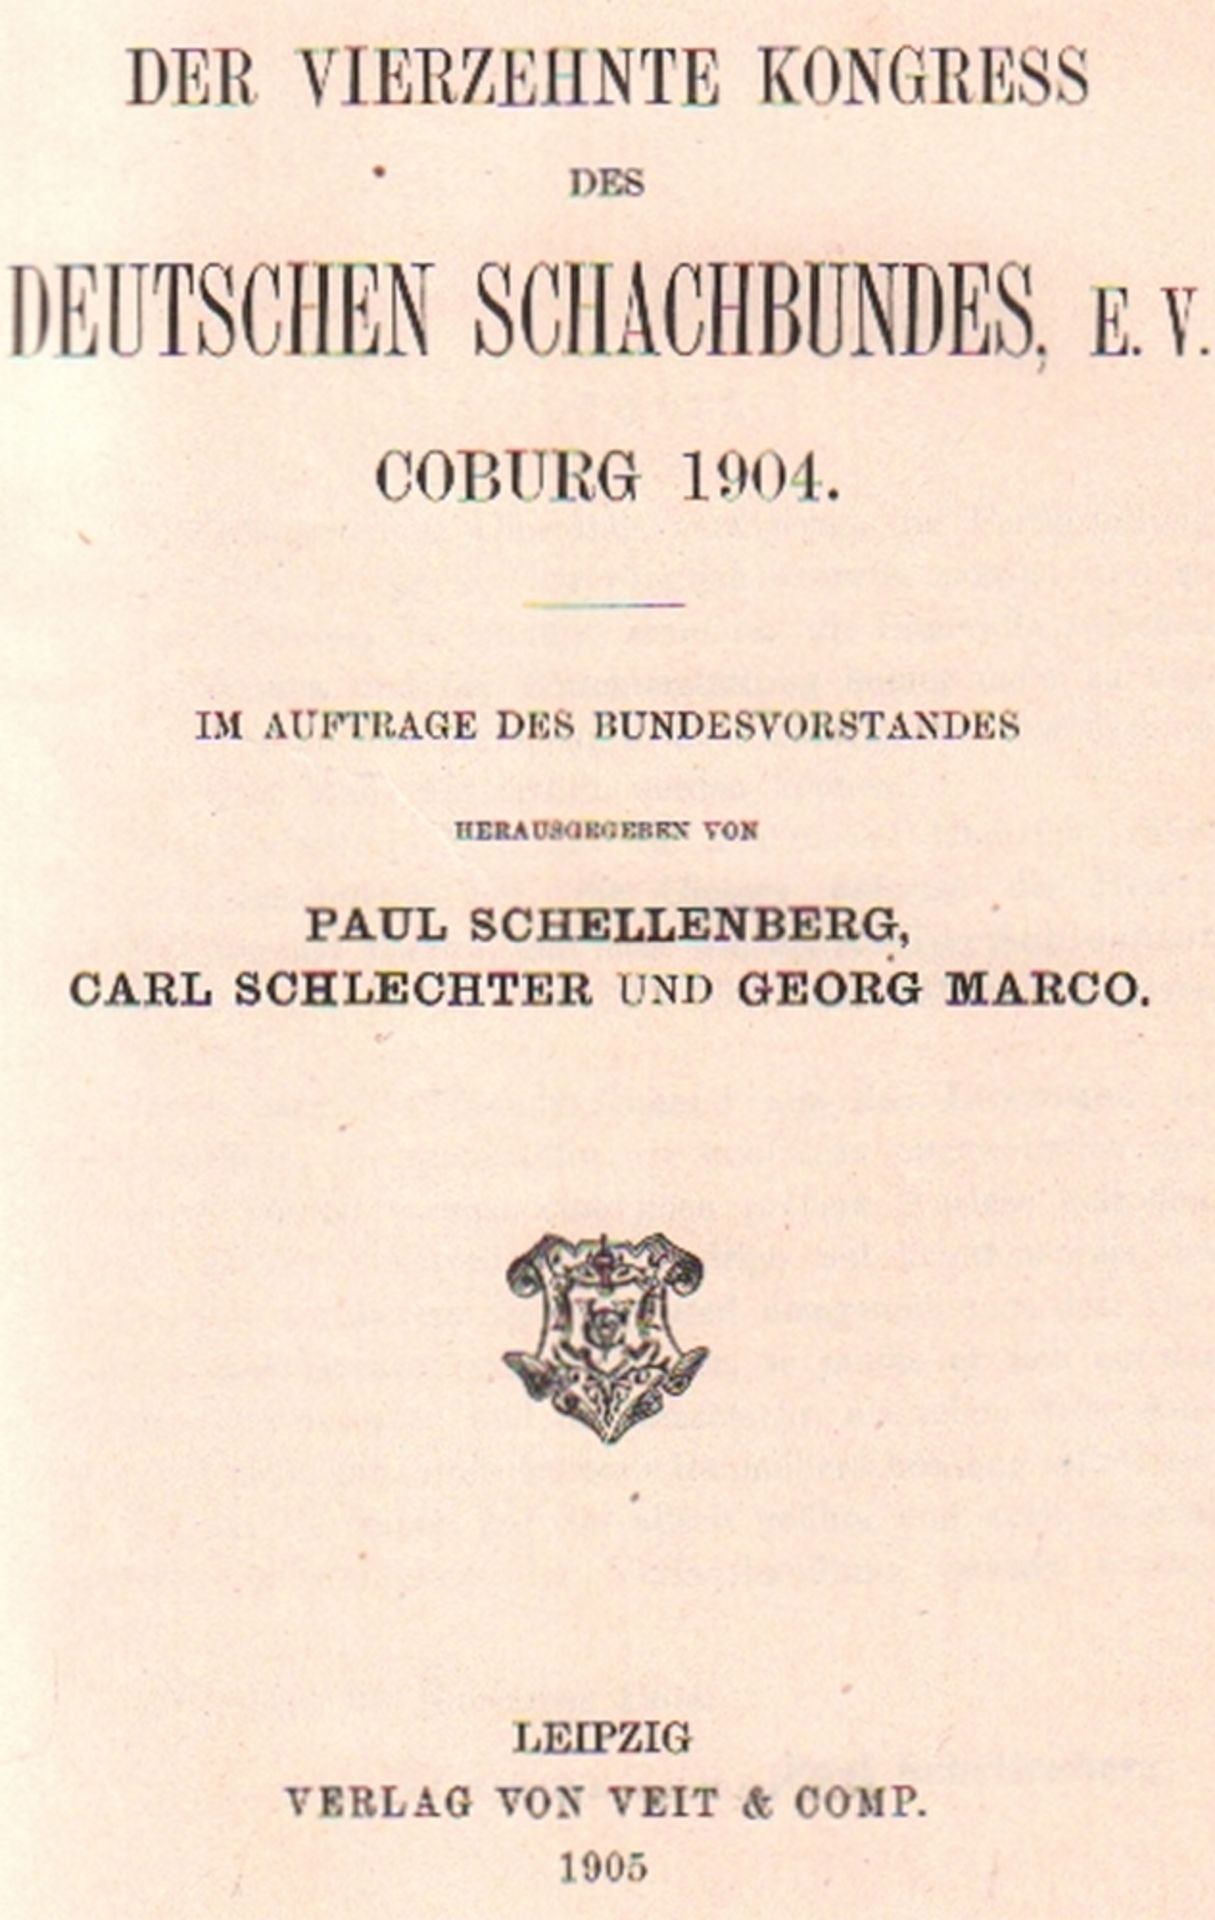 Coburg 1904. Schellenberg, Paul, Carl Schlechter und Georg Marco. Der vierzehnte Kongress des